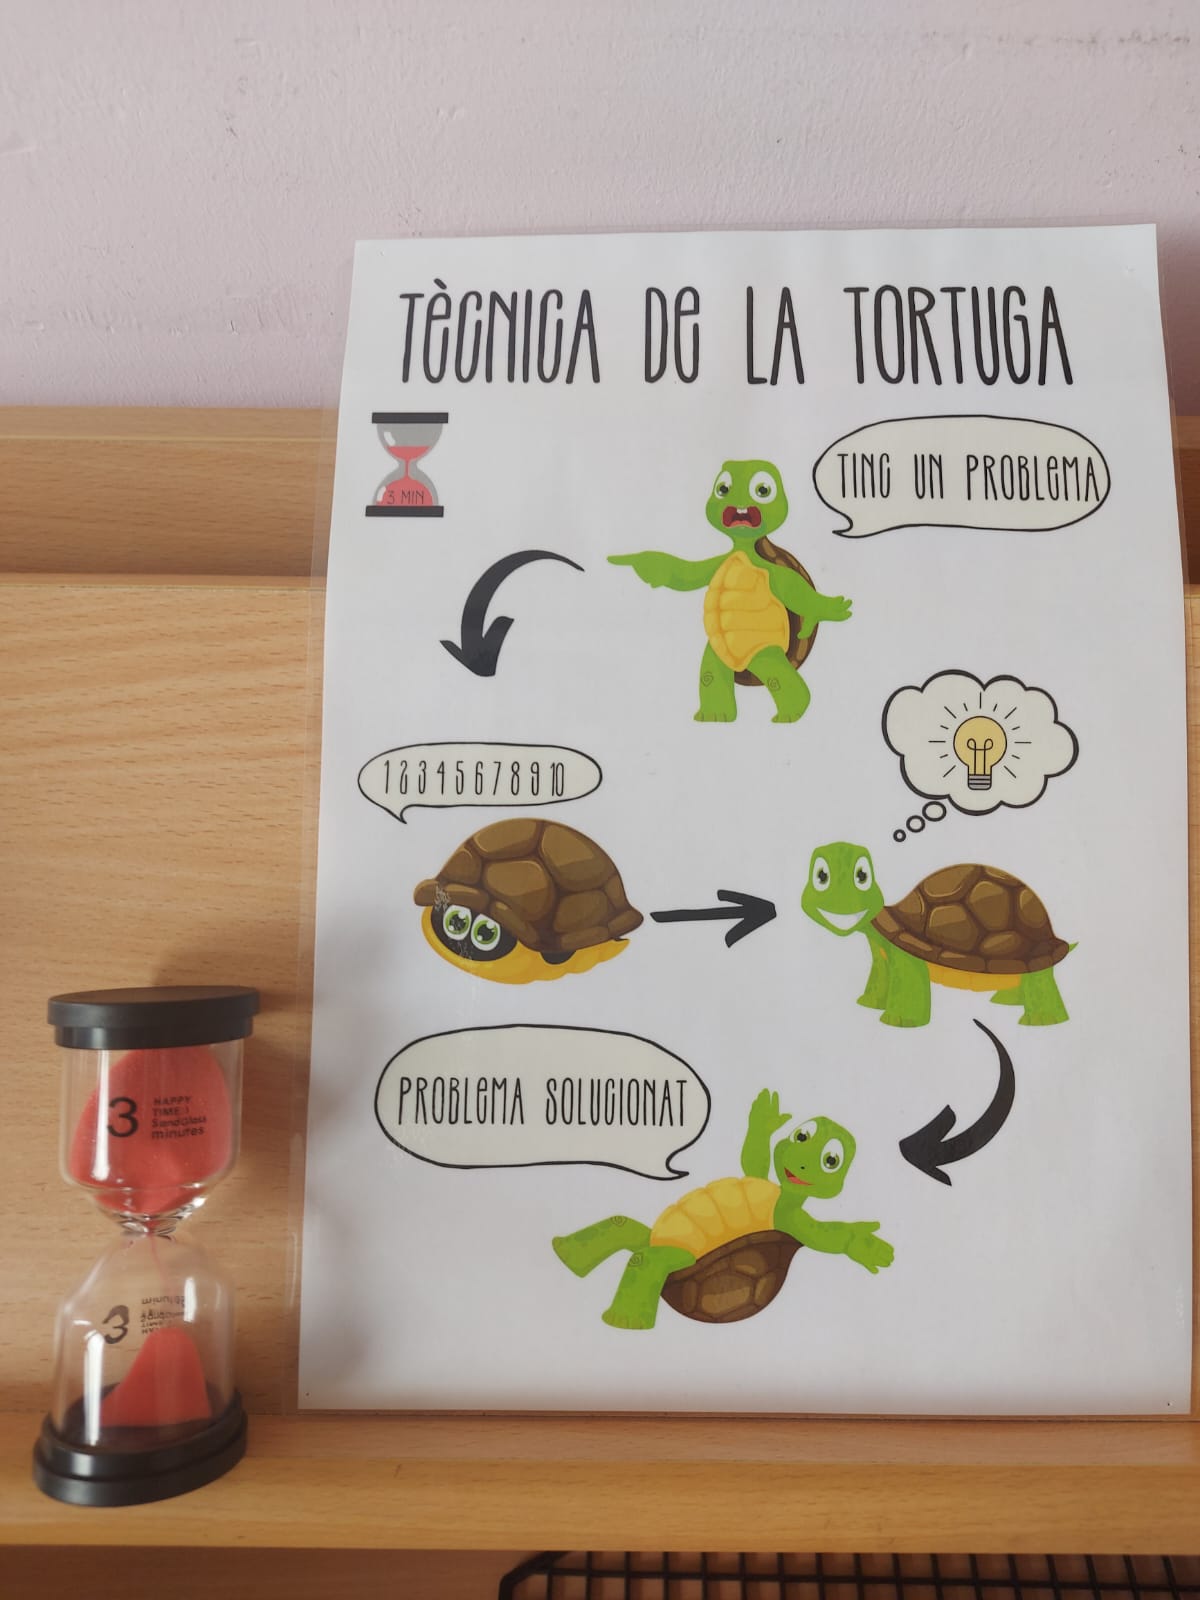 Tècnica de la tortuga